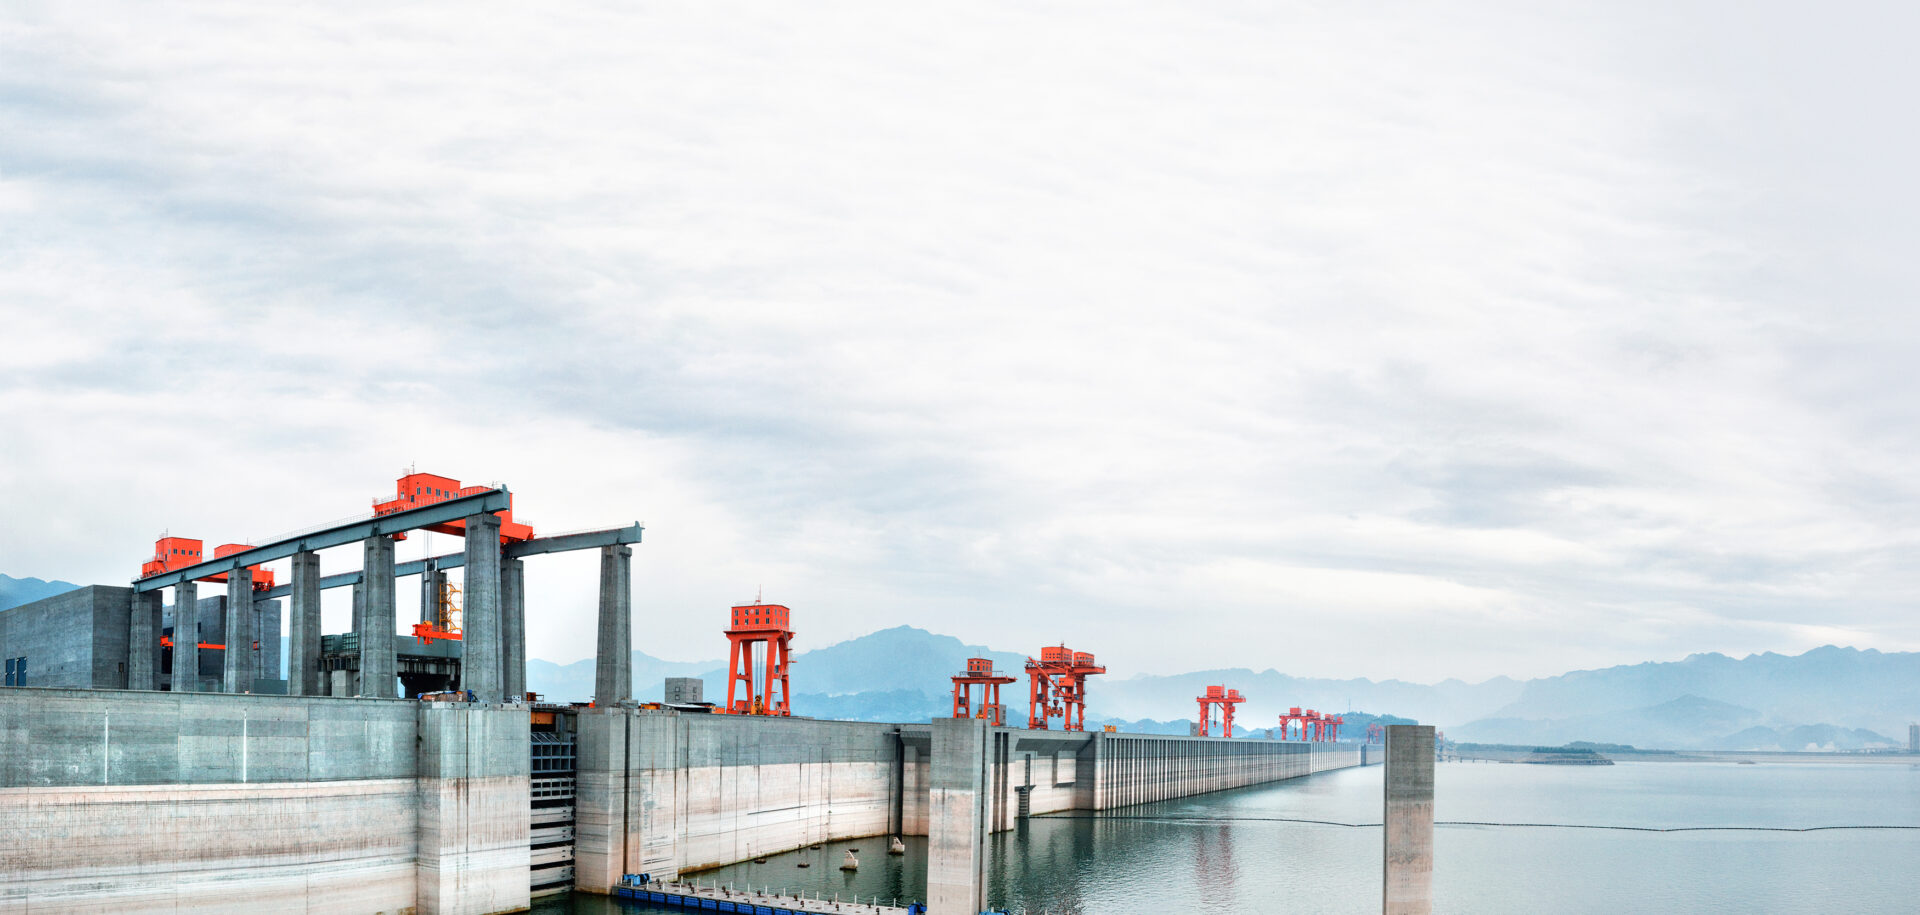 L’ascenseur à bateaux vu de la crête du barrage des Trois Gorges.